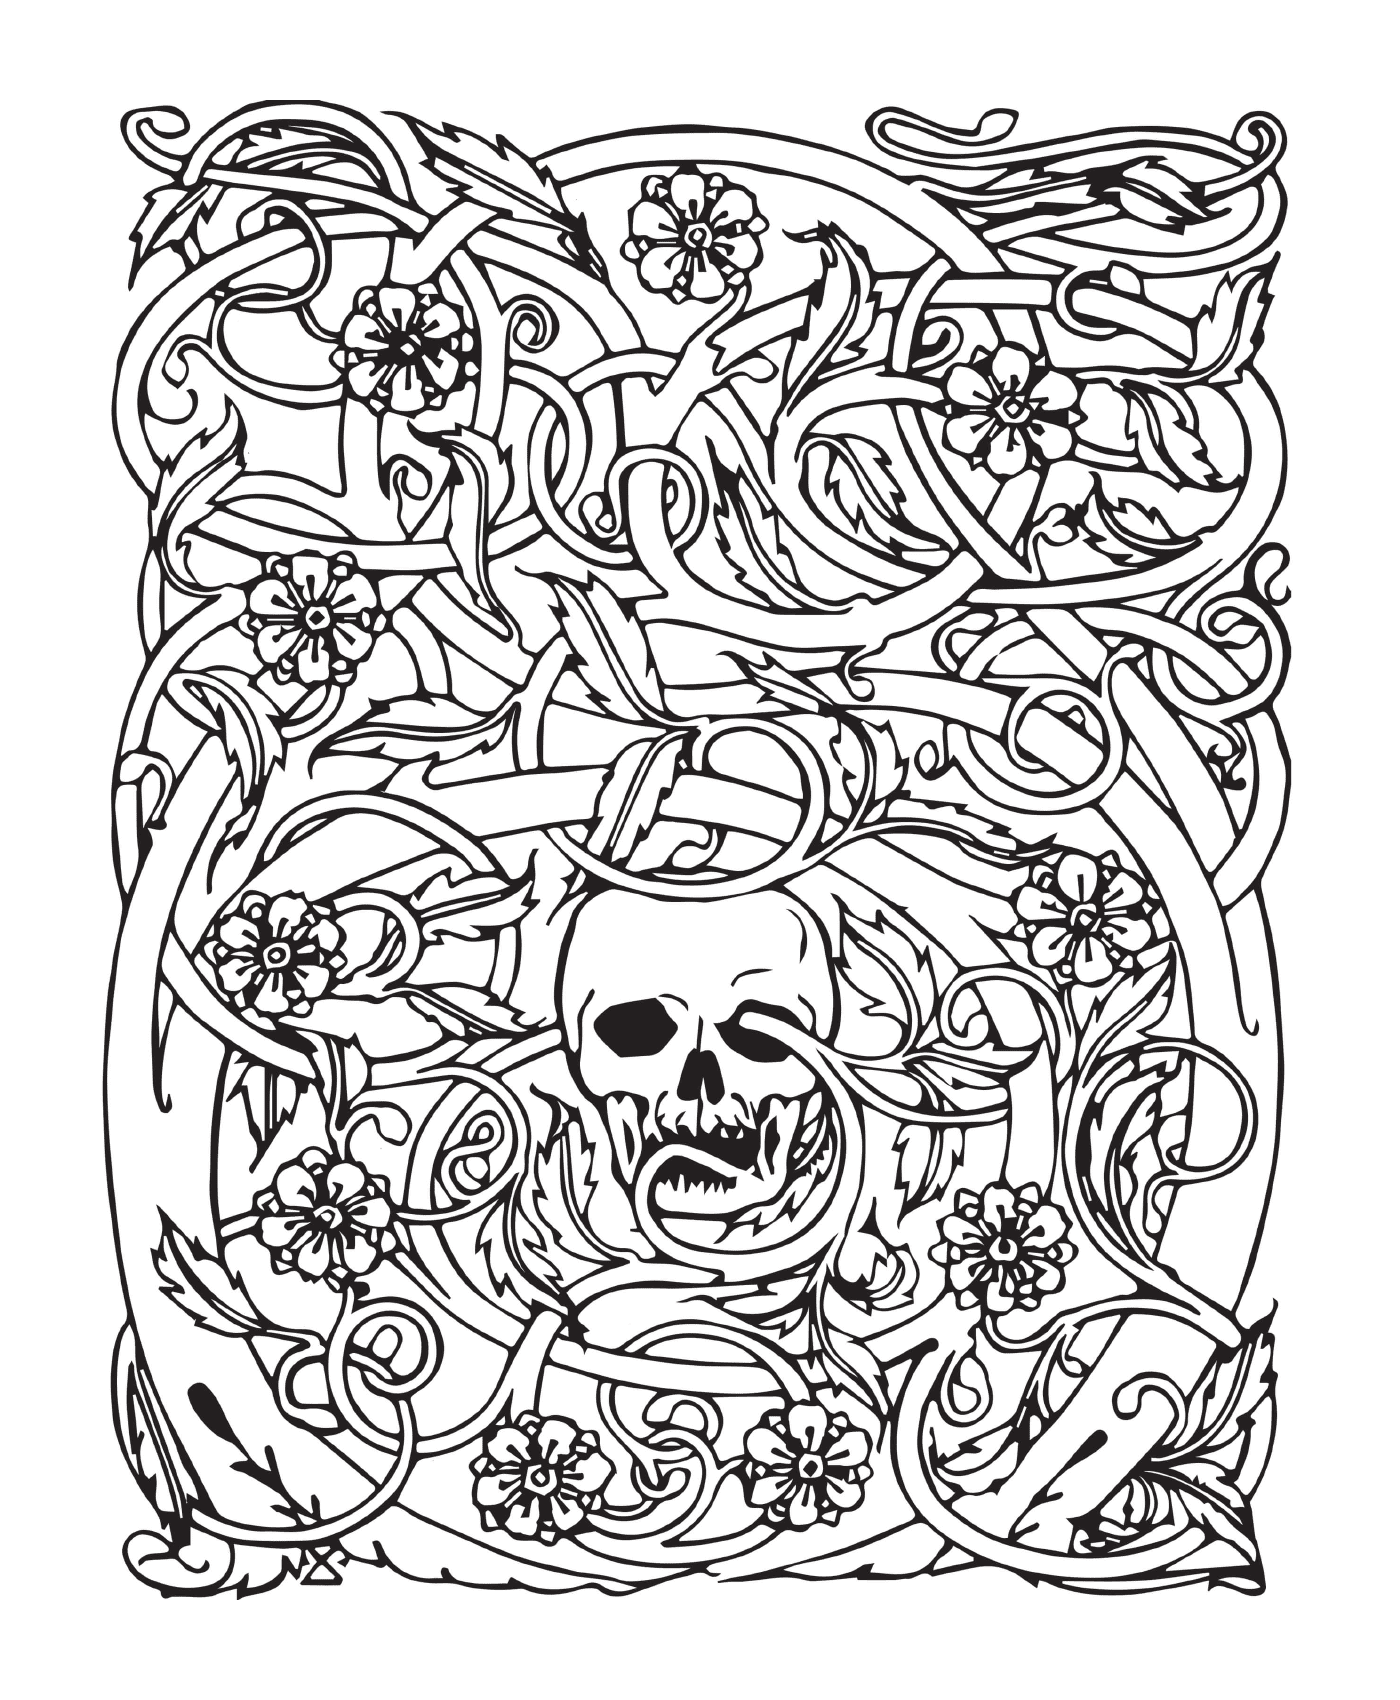  Halloween adulto, esqueleto complejo, rodeado de flores 